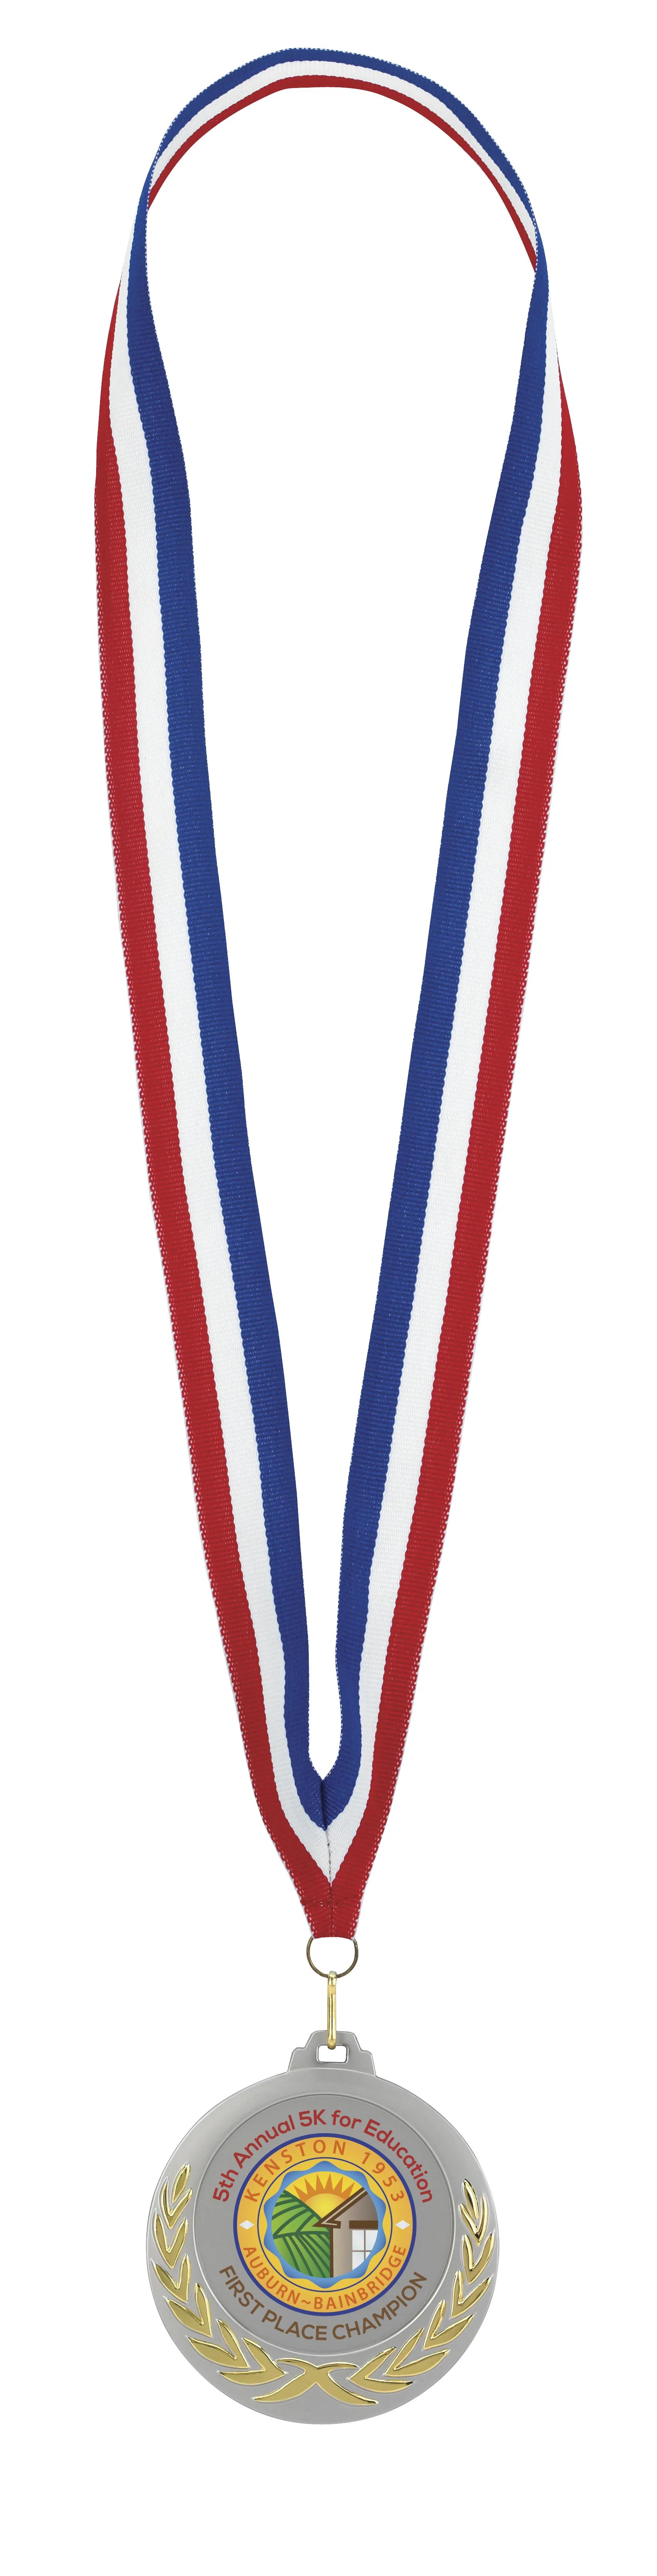 Laurel Wreath Medal 12 of 26